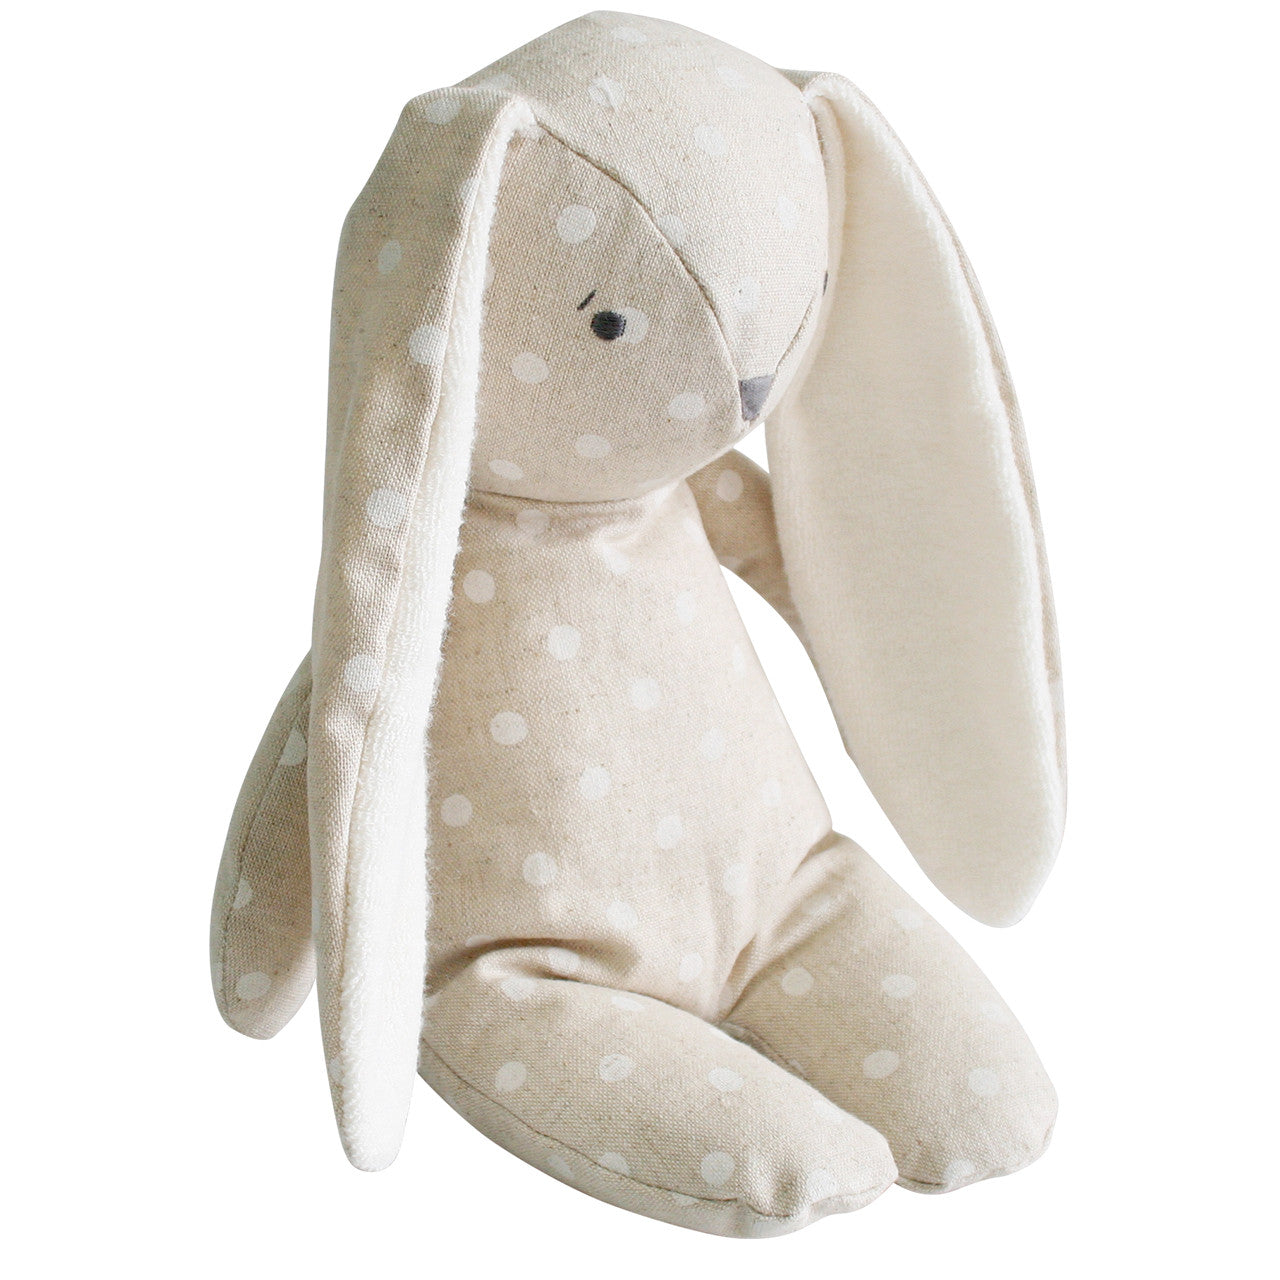 Floppy Bunny 25cm Linen White Spot